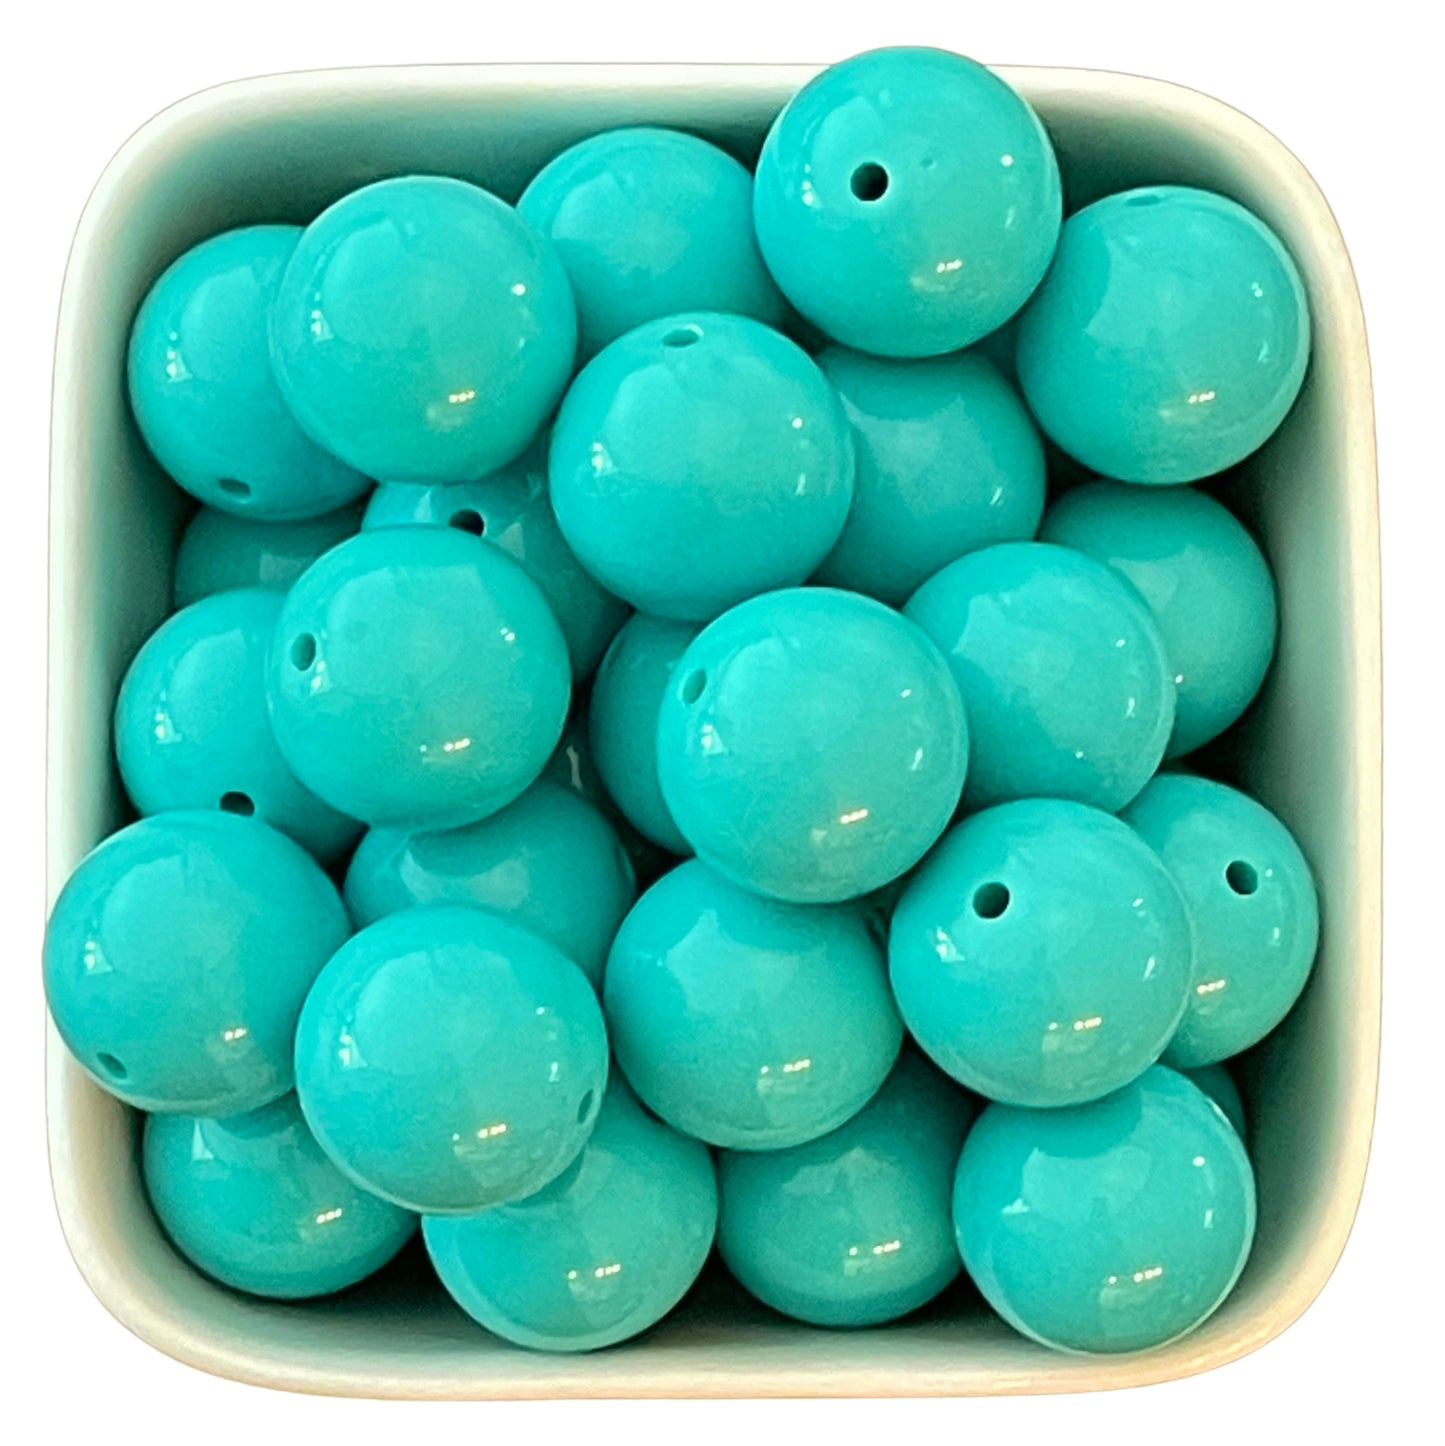 Turquoise 20mm Acrylic Beads - 5 pk.